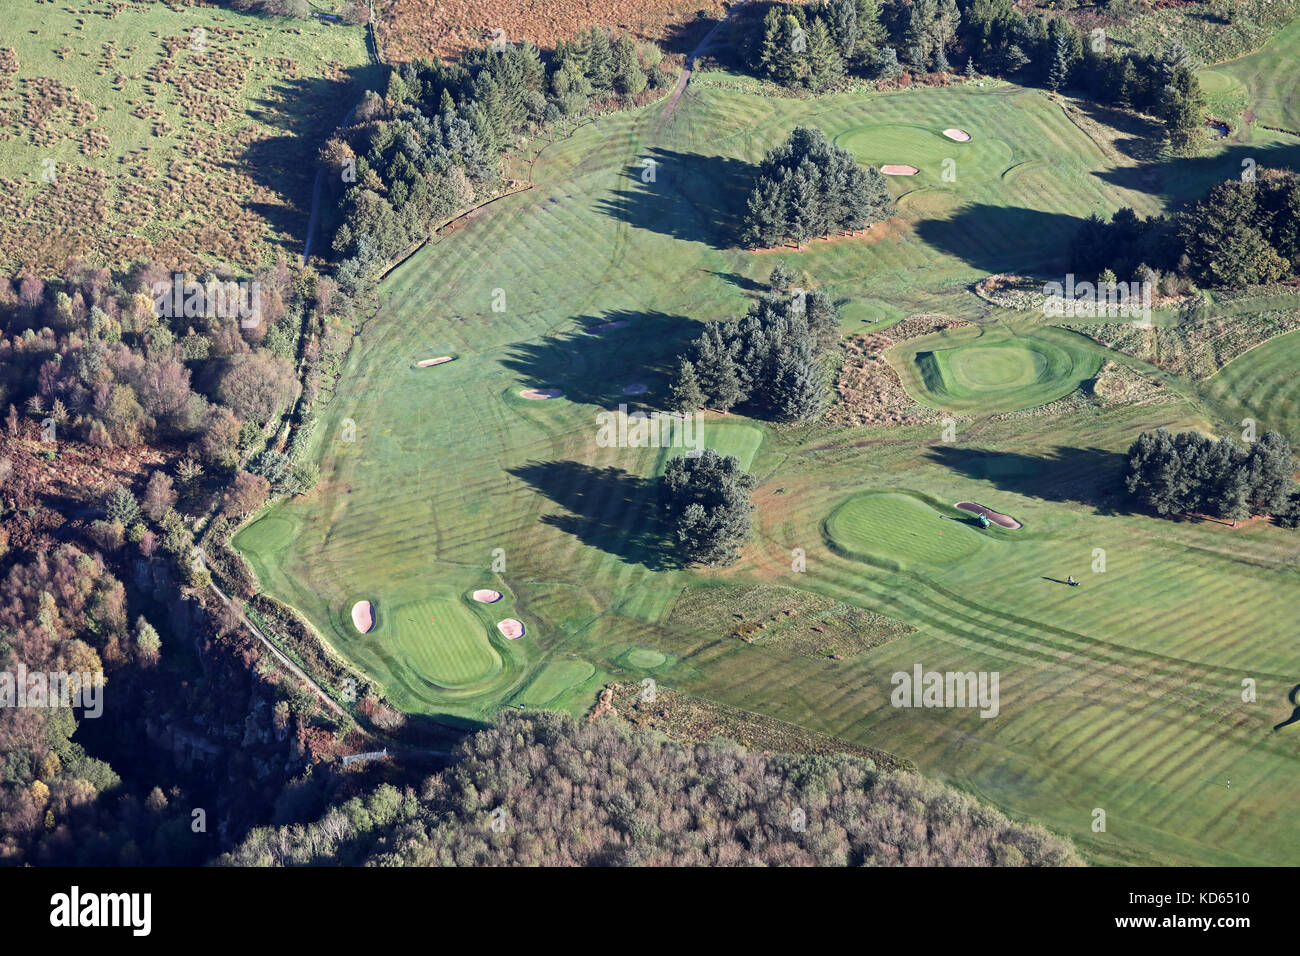 Vue aérienne d'un trou de golf avec fairway, Green & bunkers, Lancashire, UK Banque D'Images